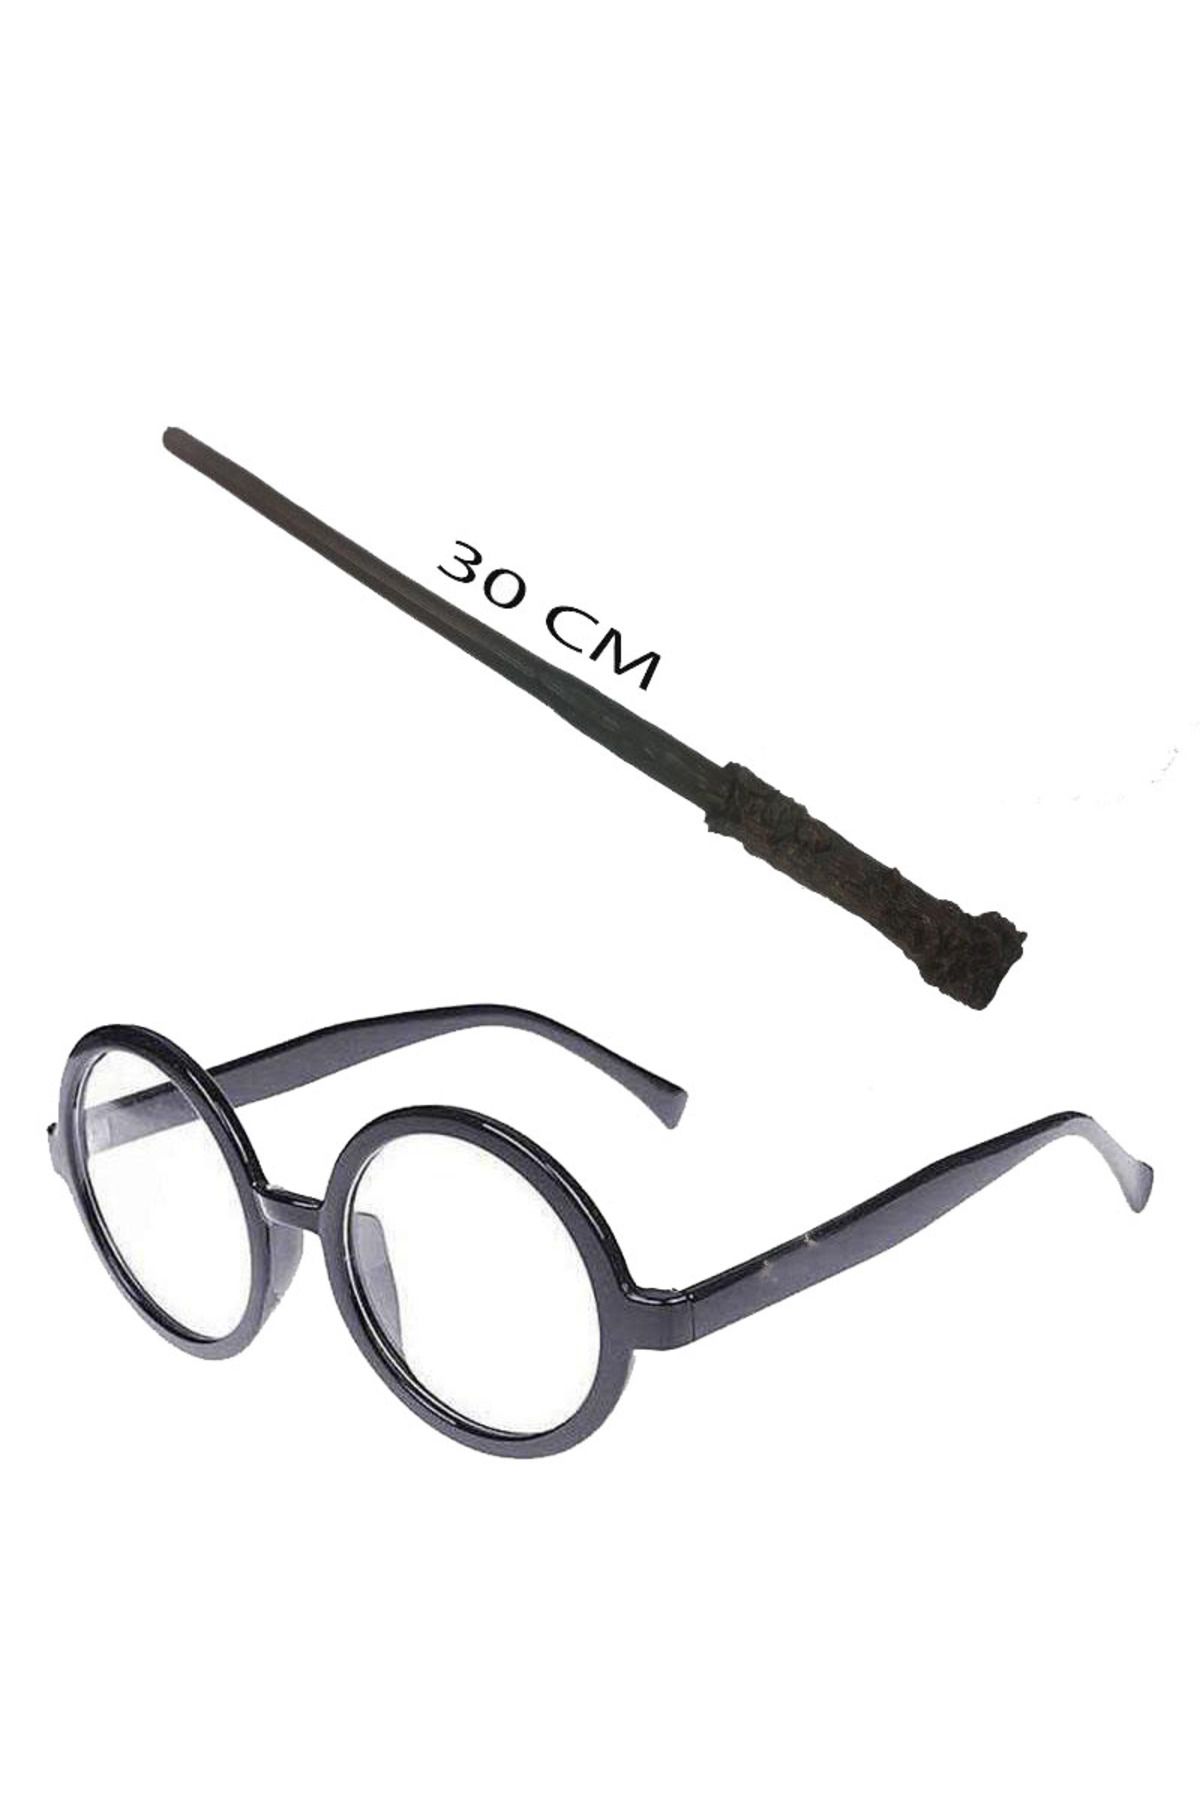 Genel Markalar Harry Potter Asası 30 Cm Ve Siyah Çerçeveli Harry Potter Gözlüğü Seti (LİSİNYA)